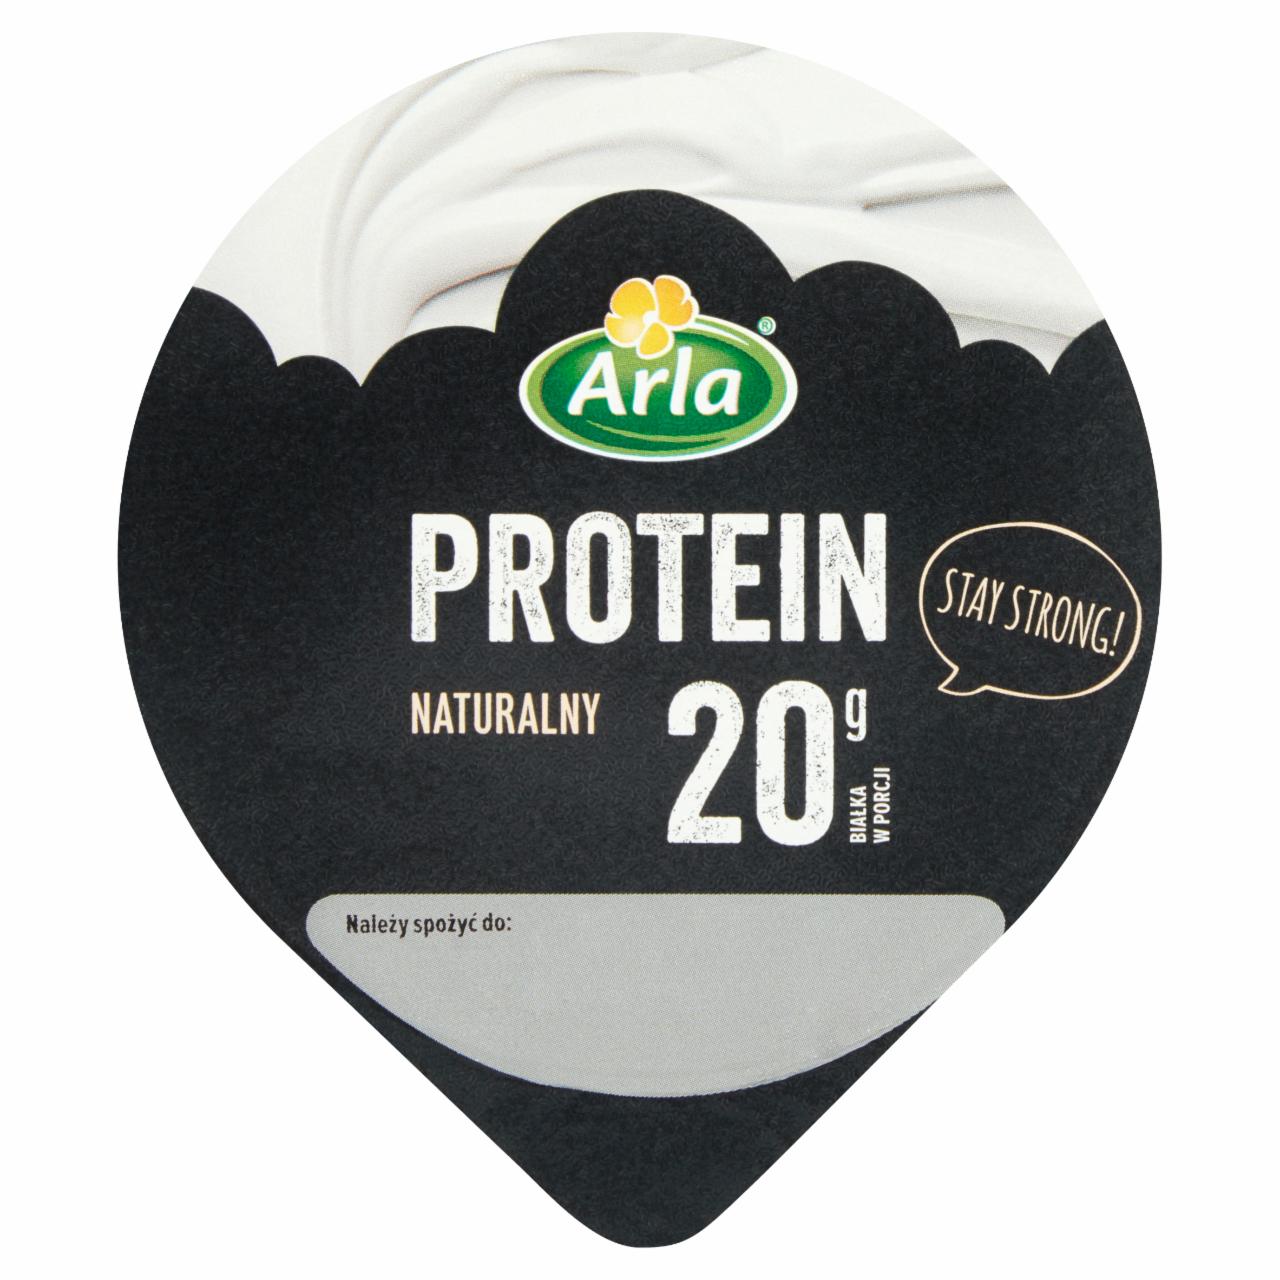 Zdjęcia - Arla Protein Serek wysokobiałkowy naturalny 200 g